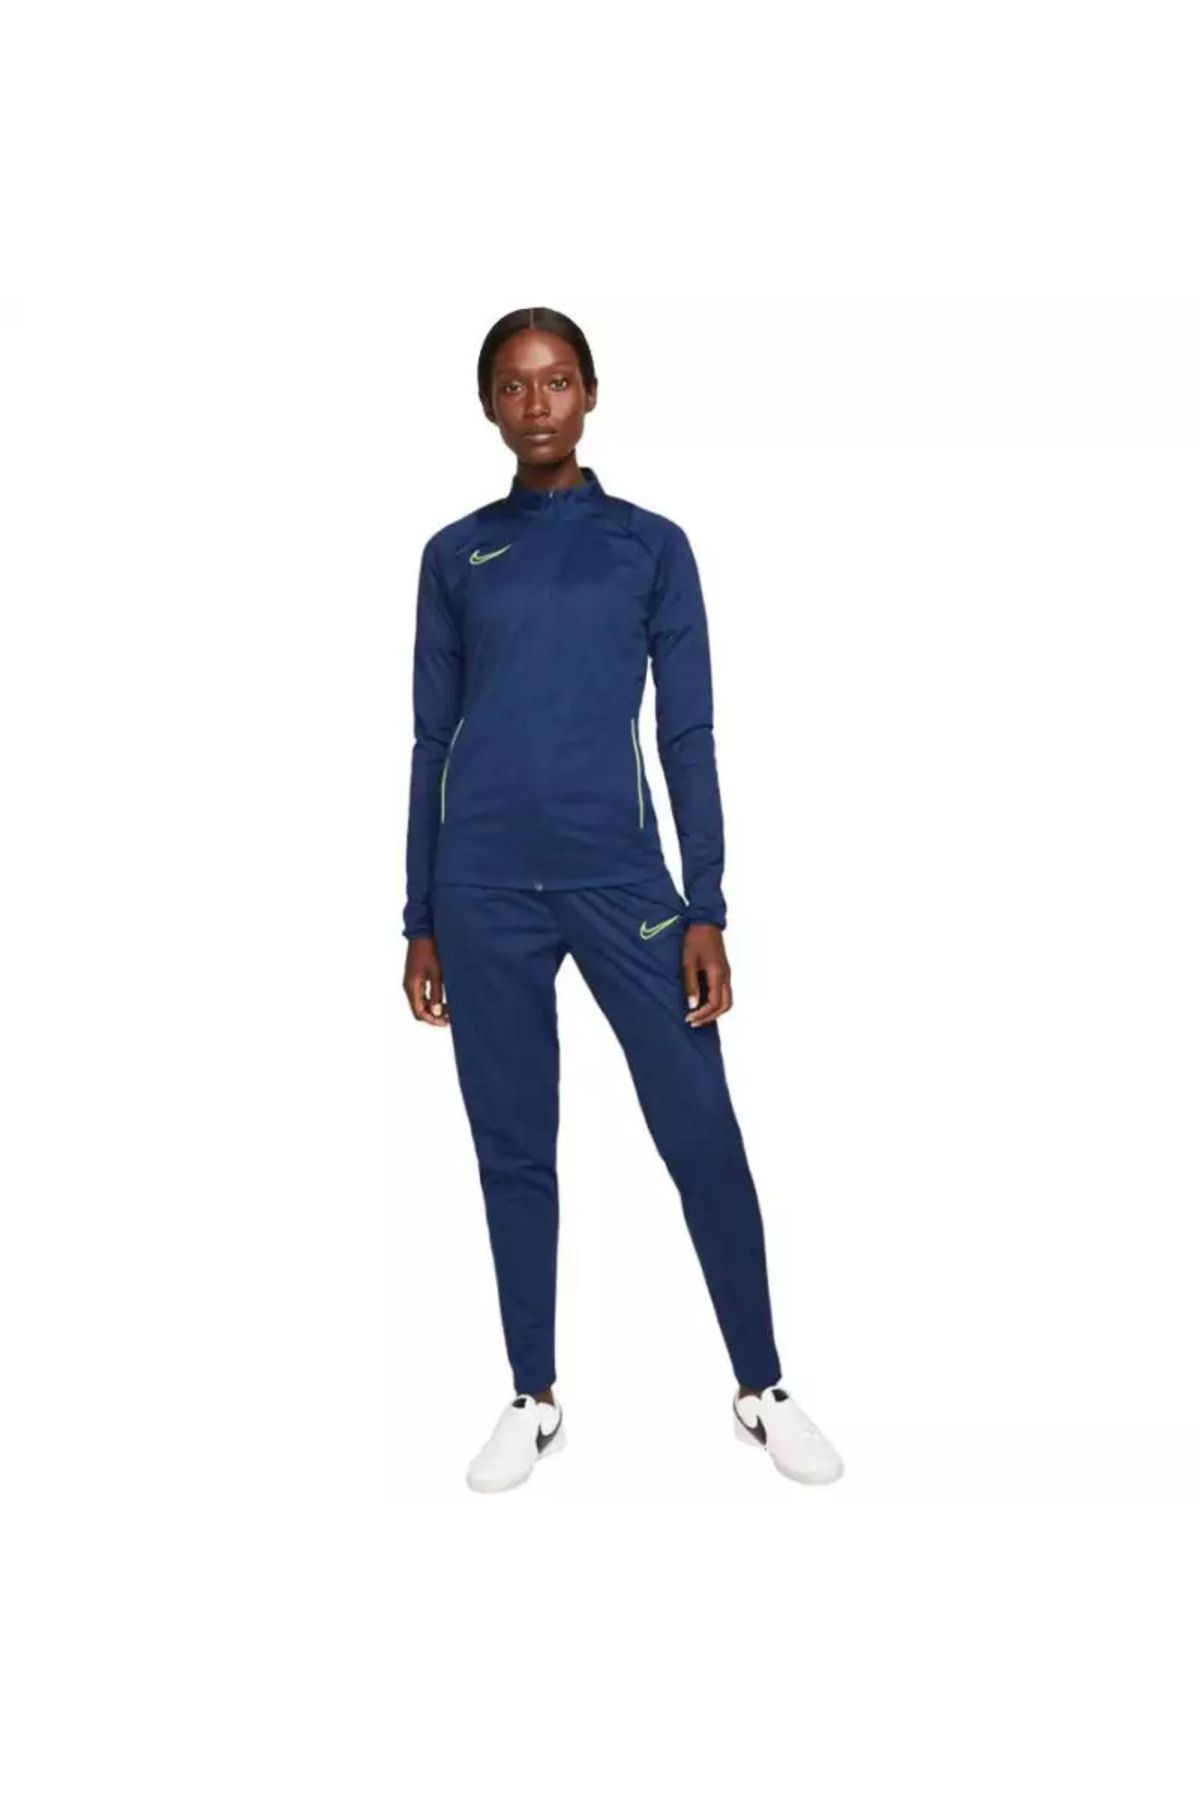 Nike W Nk Df Acd21 Trk Suit K dri fit kadın mavi eşofman takımı